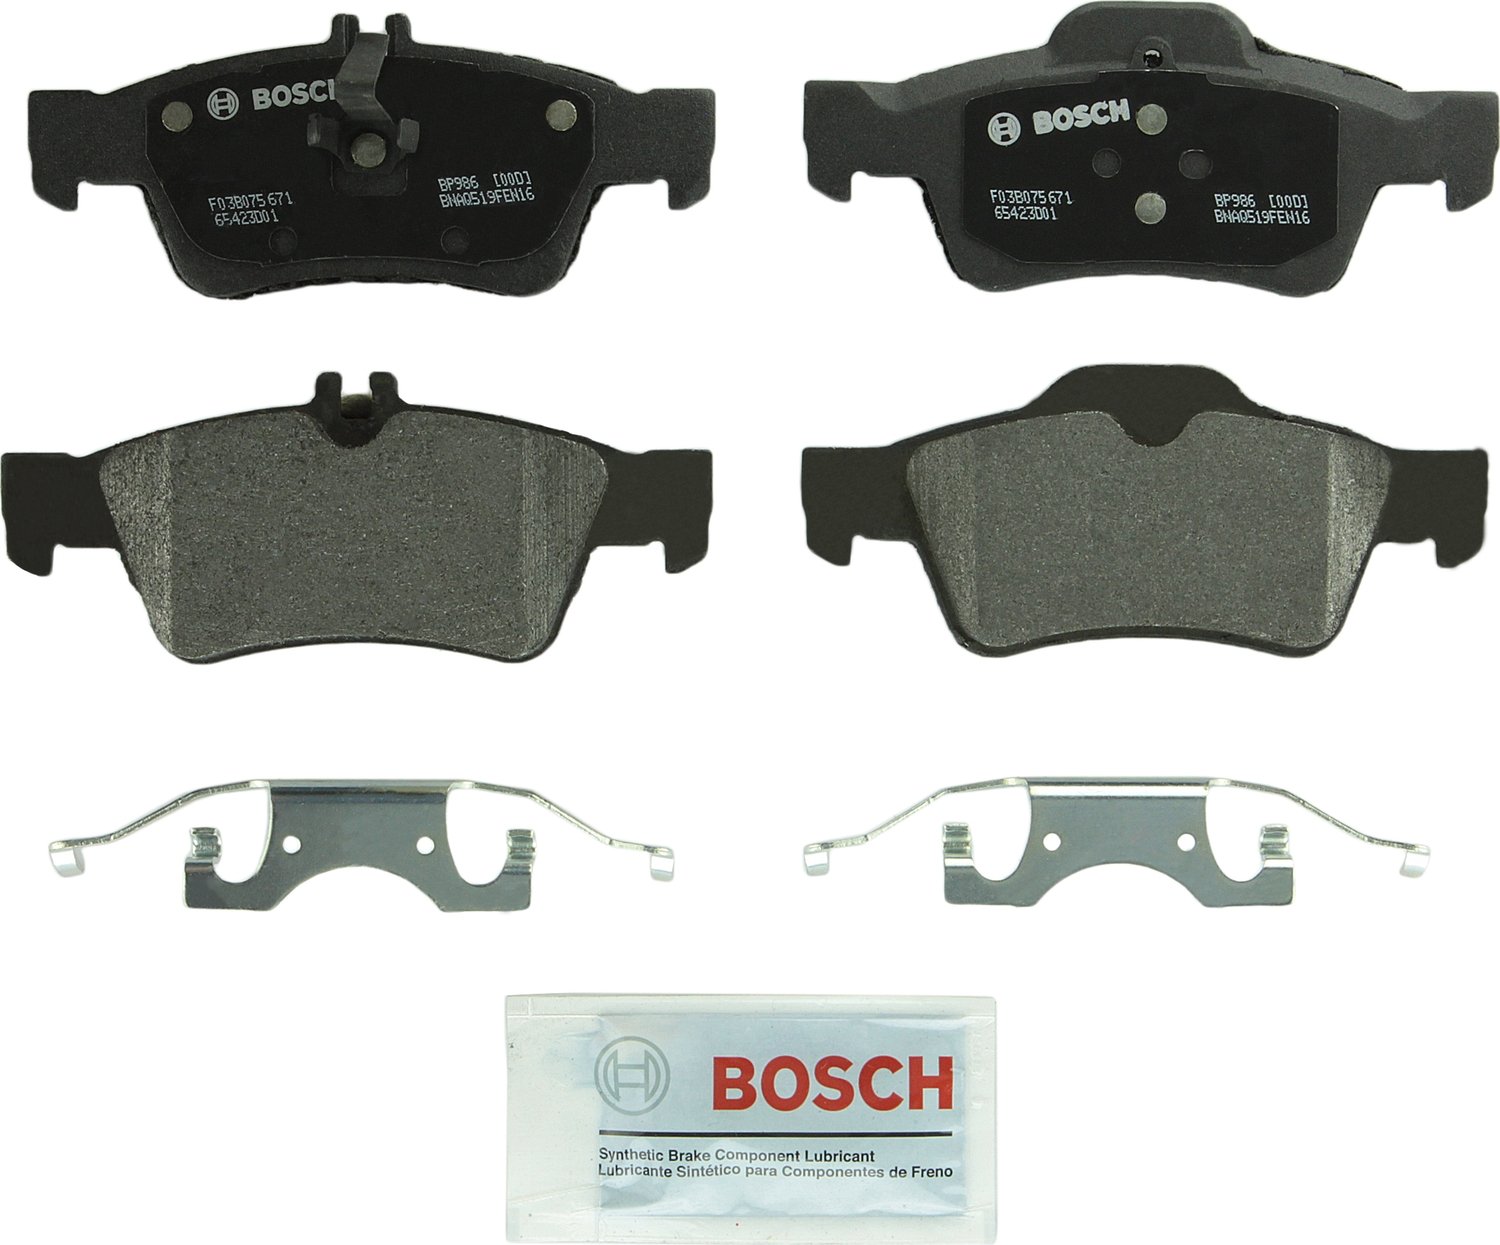 Bosch BP986 QuietCast Premium Semi-Metallic Disc Brake ...